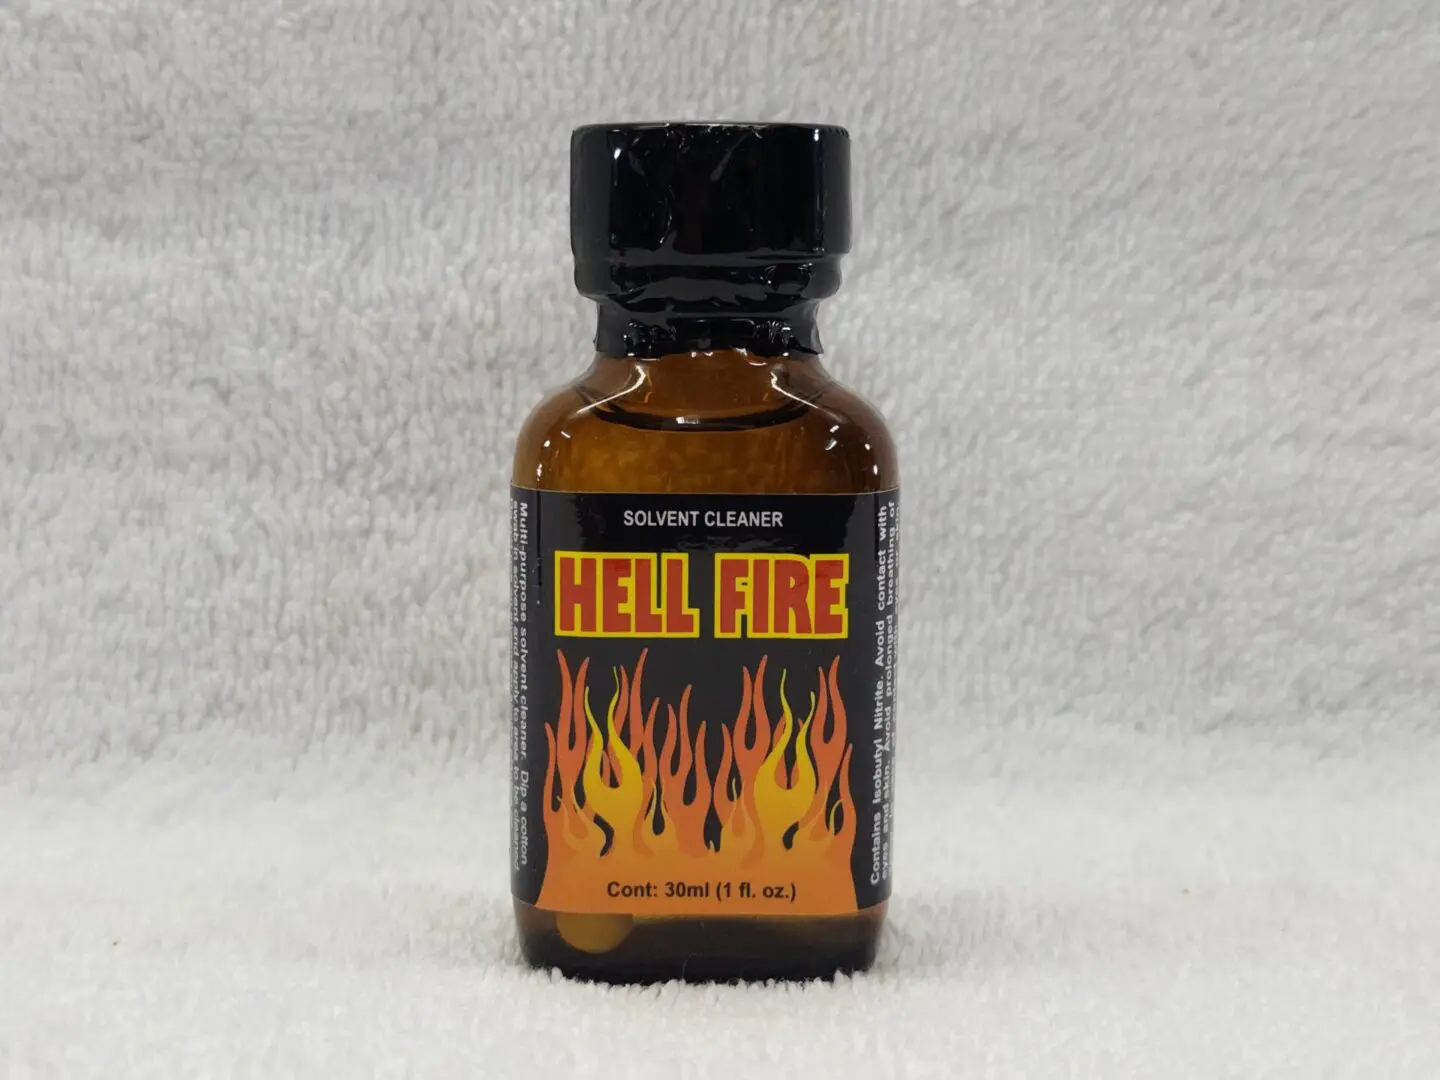 A bottle of hell fire